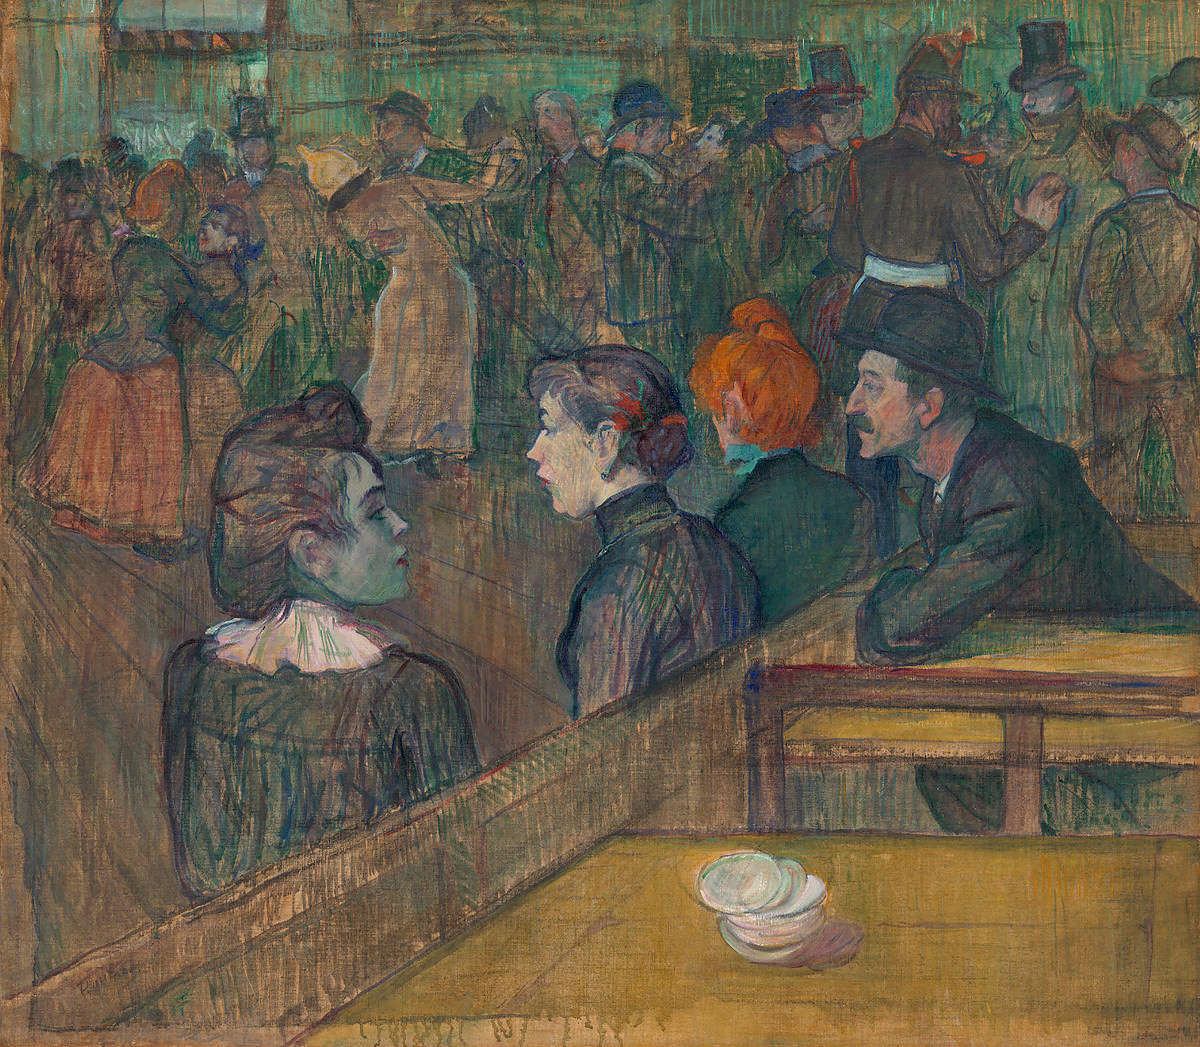 Feige. 11 -Moulin De La Galette, Toulouse-Lautrec, 1889. Fotos: Bekanntgabe.